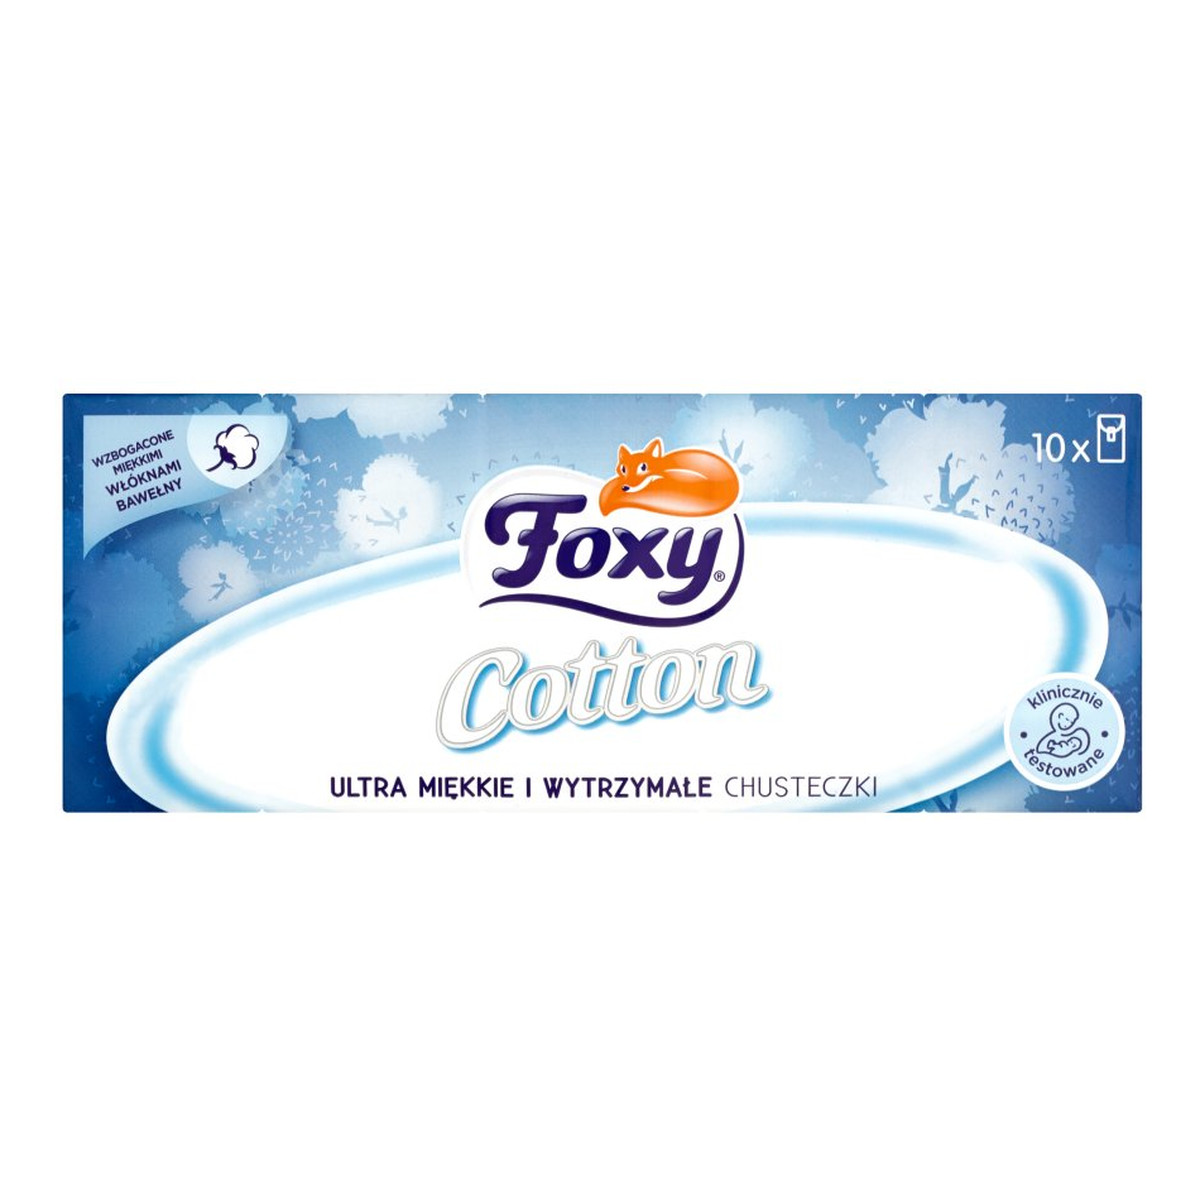 Foxy Cotton Ultra miękkie i wytrzymałe chusteczki